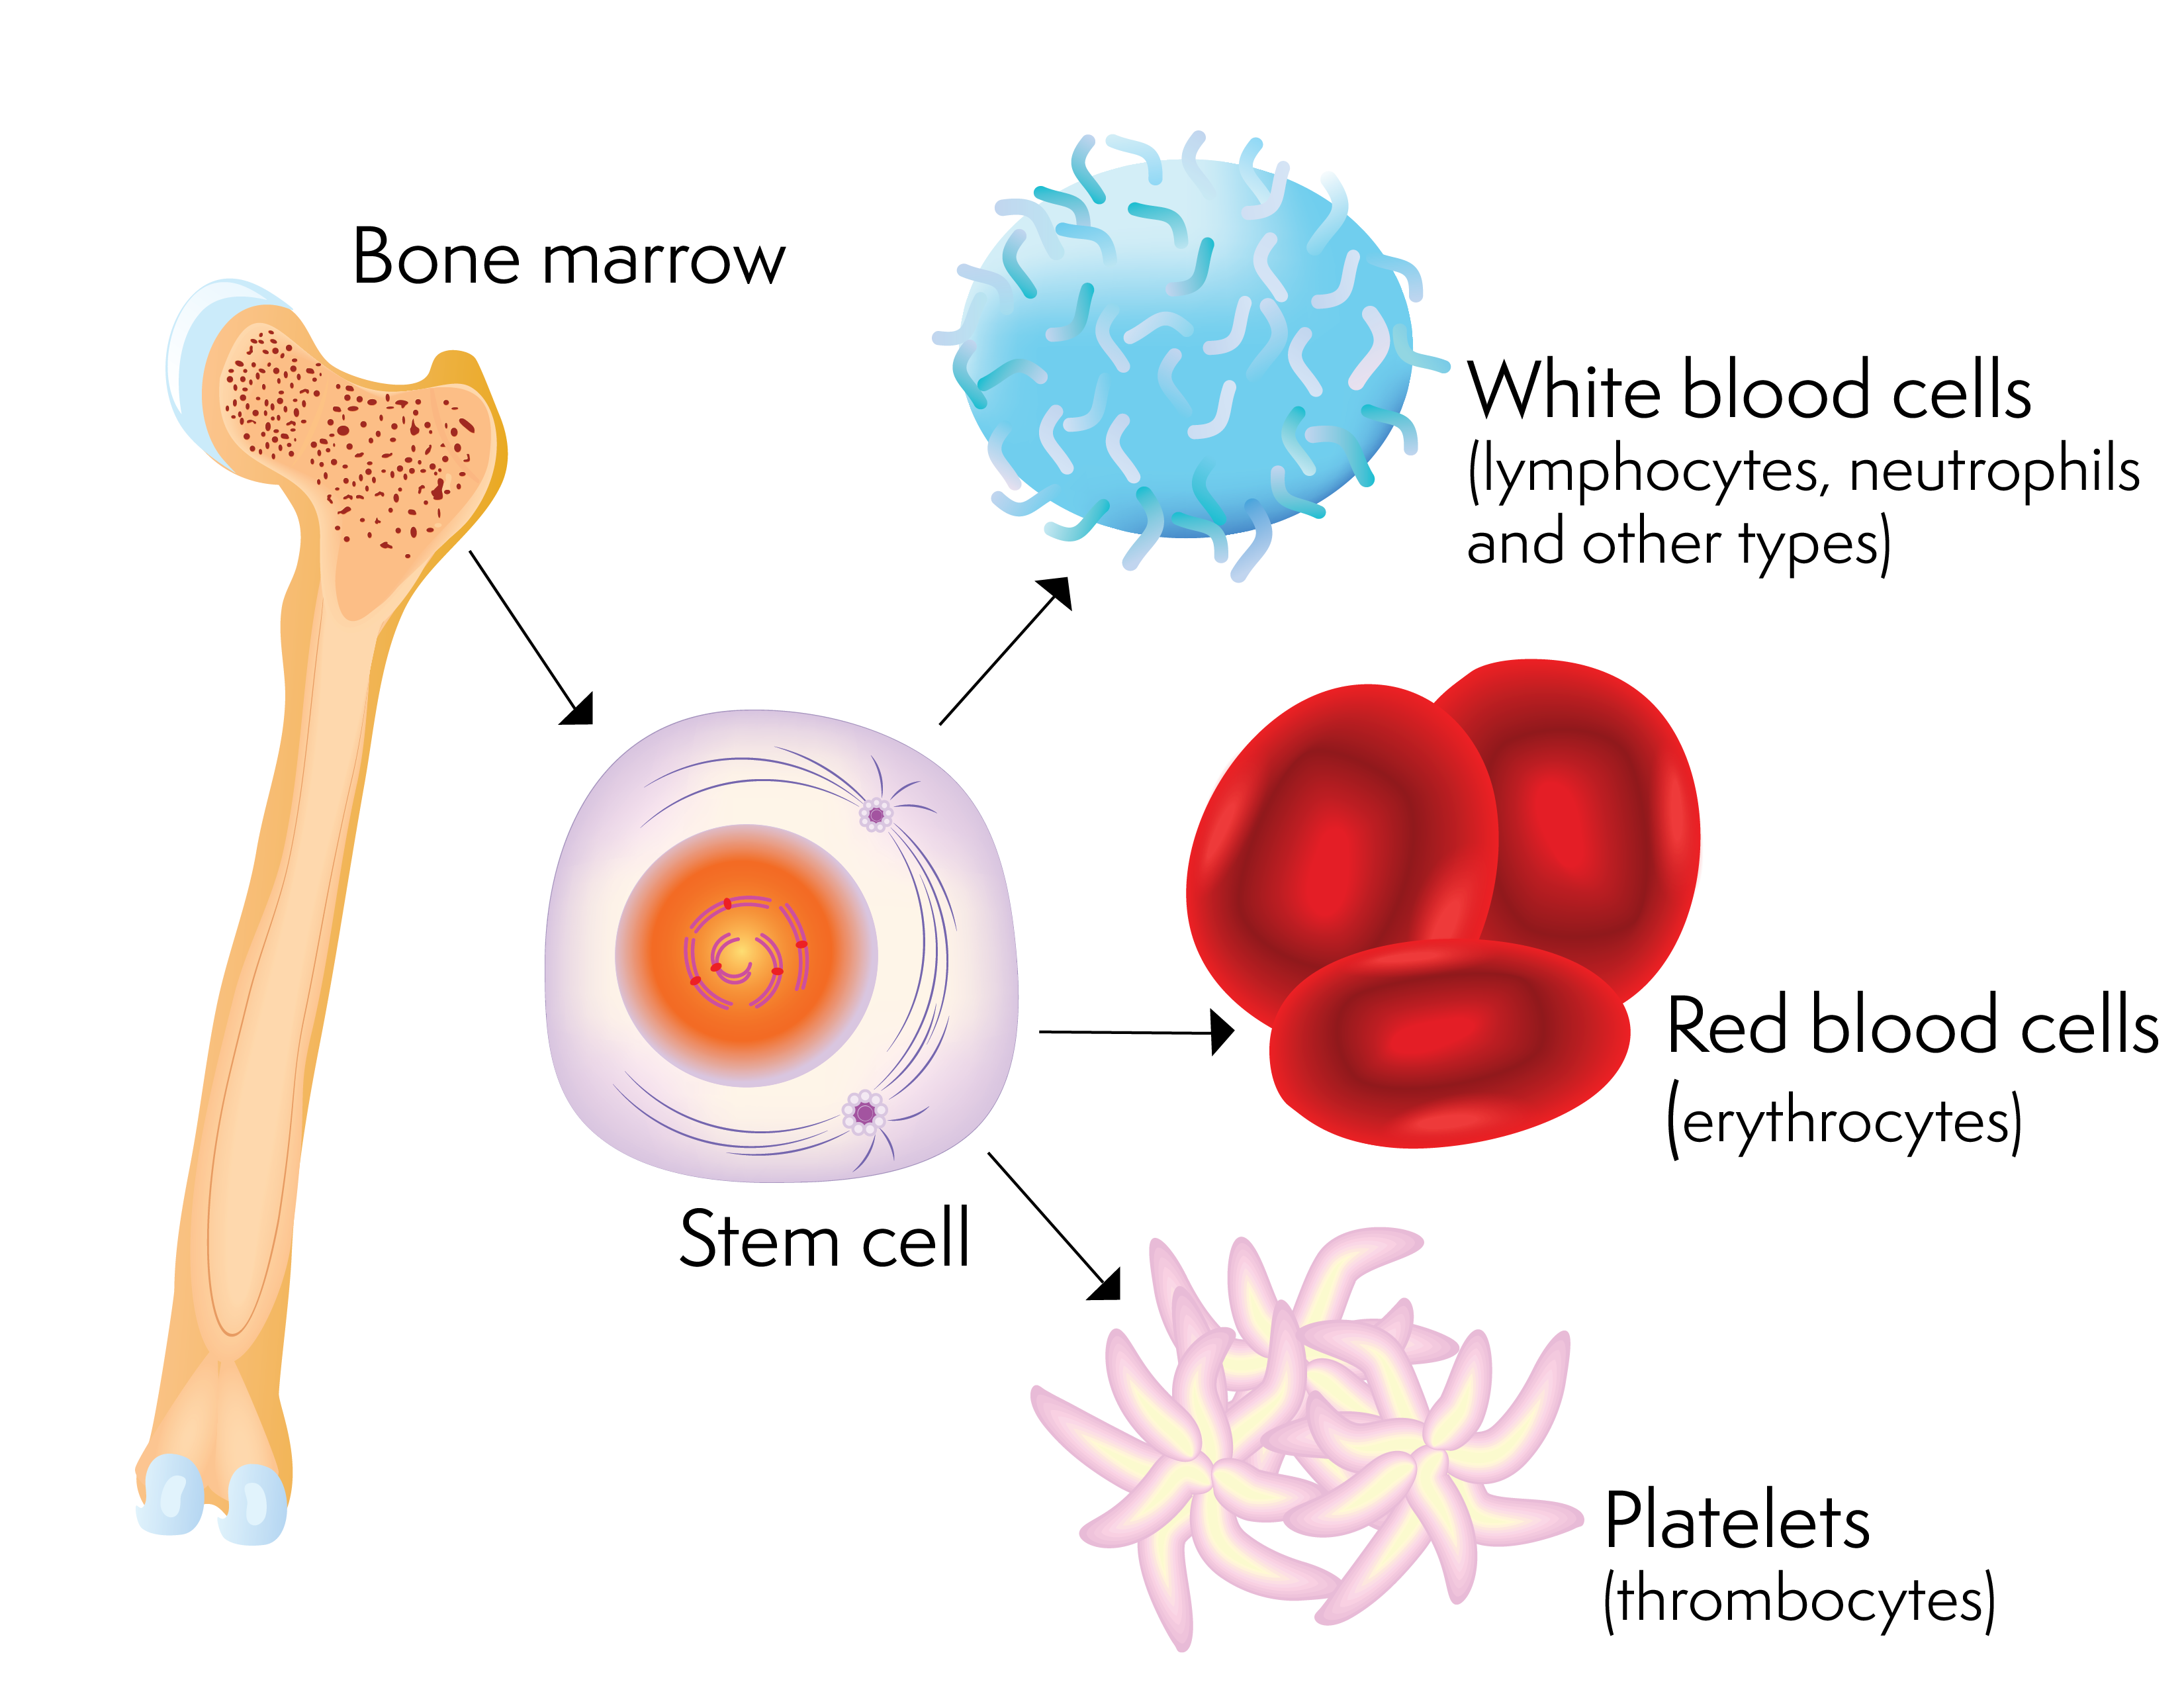 Une cellule souche et les cellules sanguines qu'elle peut produire